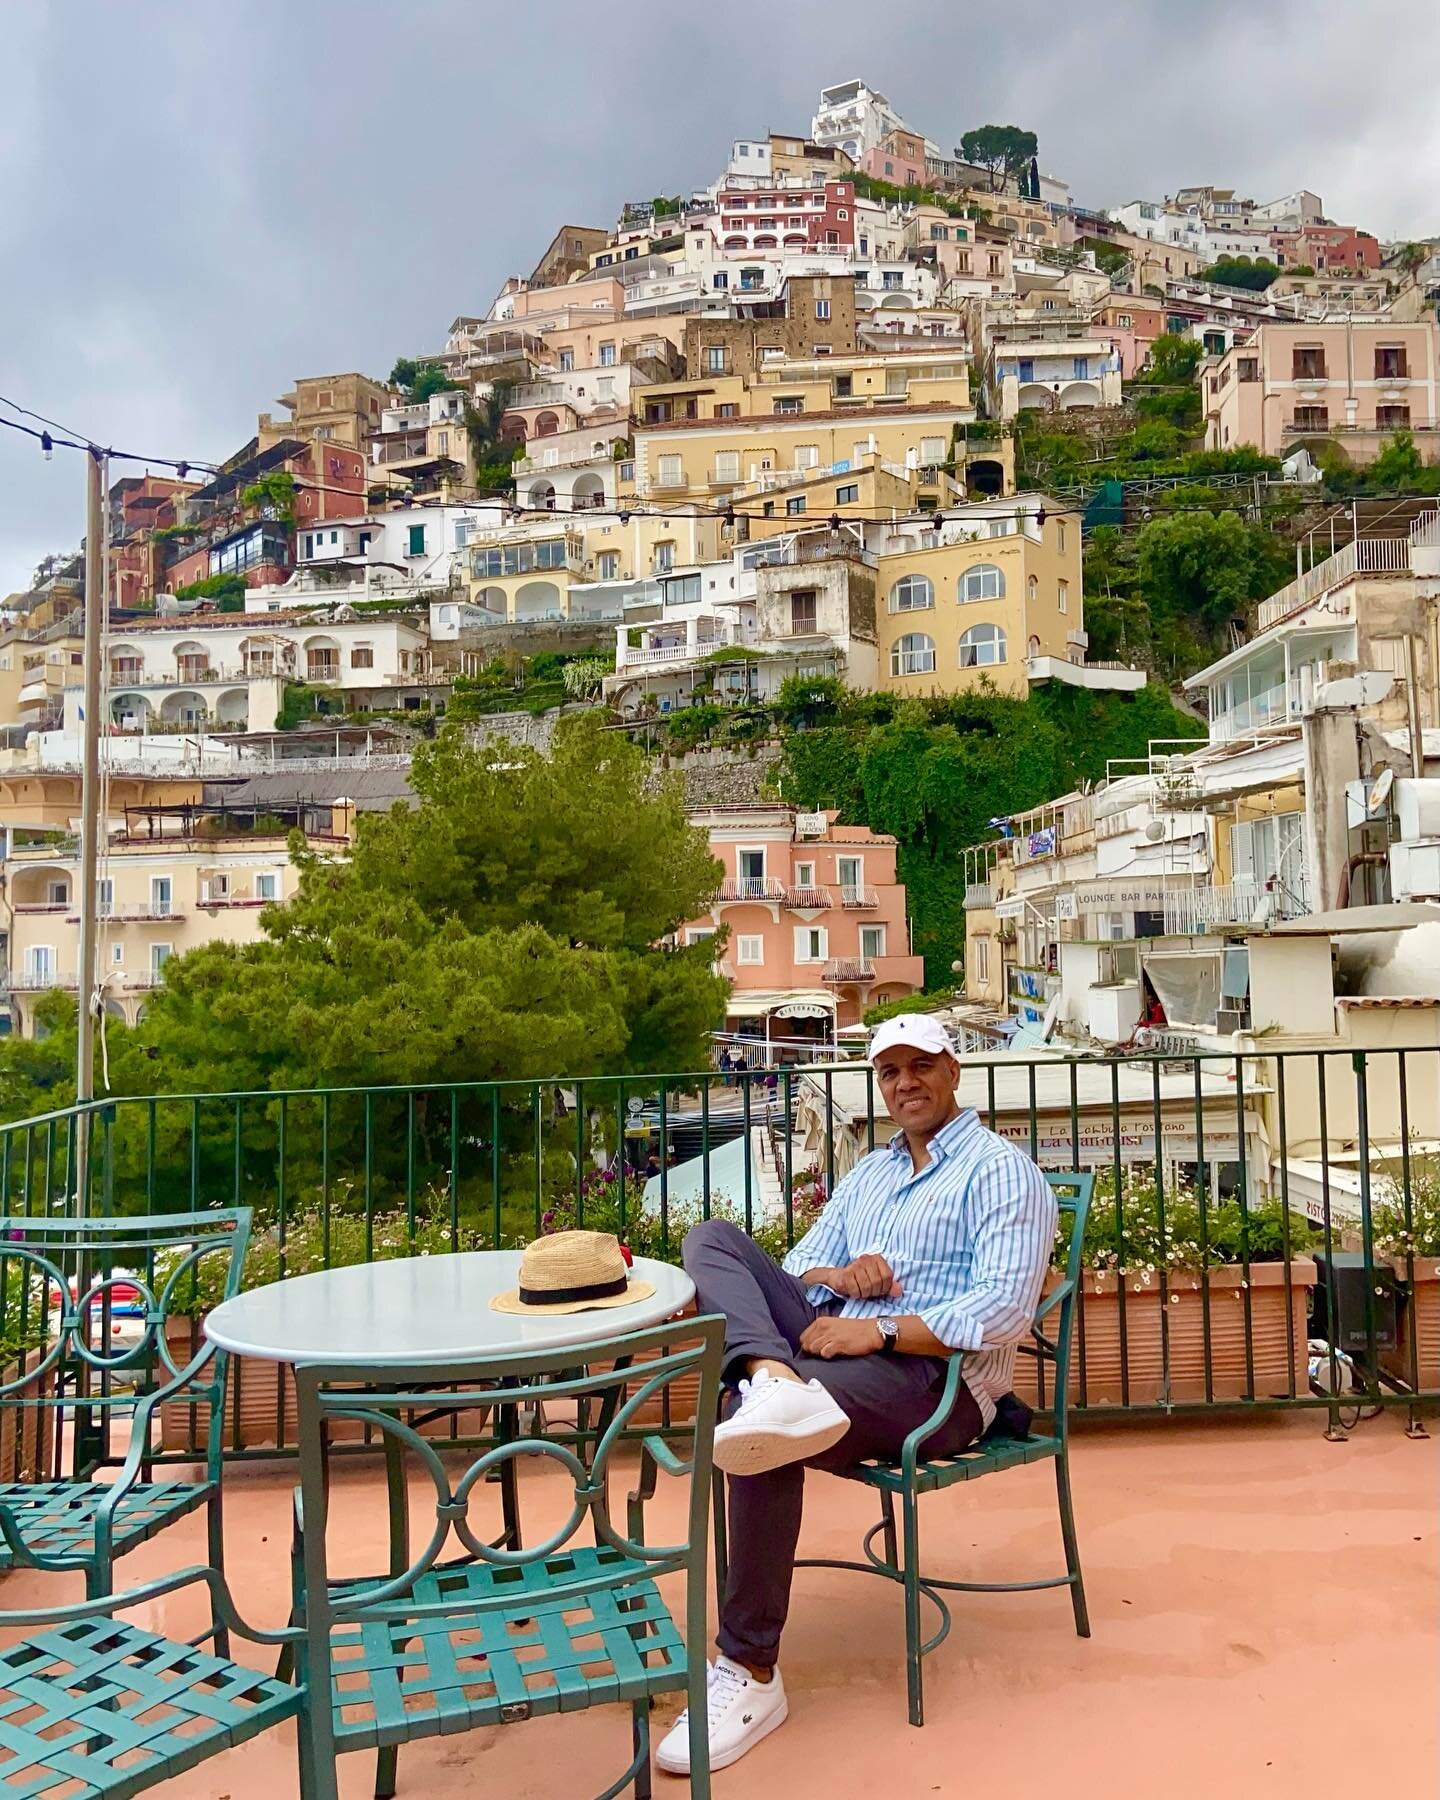 Positano, Amalfi Coast, Italy @laterratravel 
&bull;
&bull;
#positano #amalfycoast #italy #travel